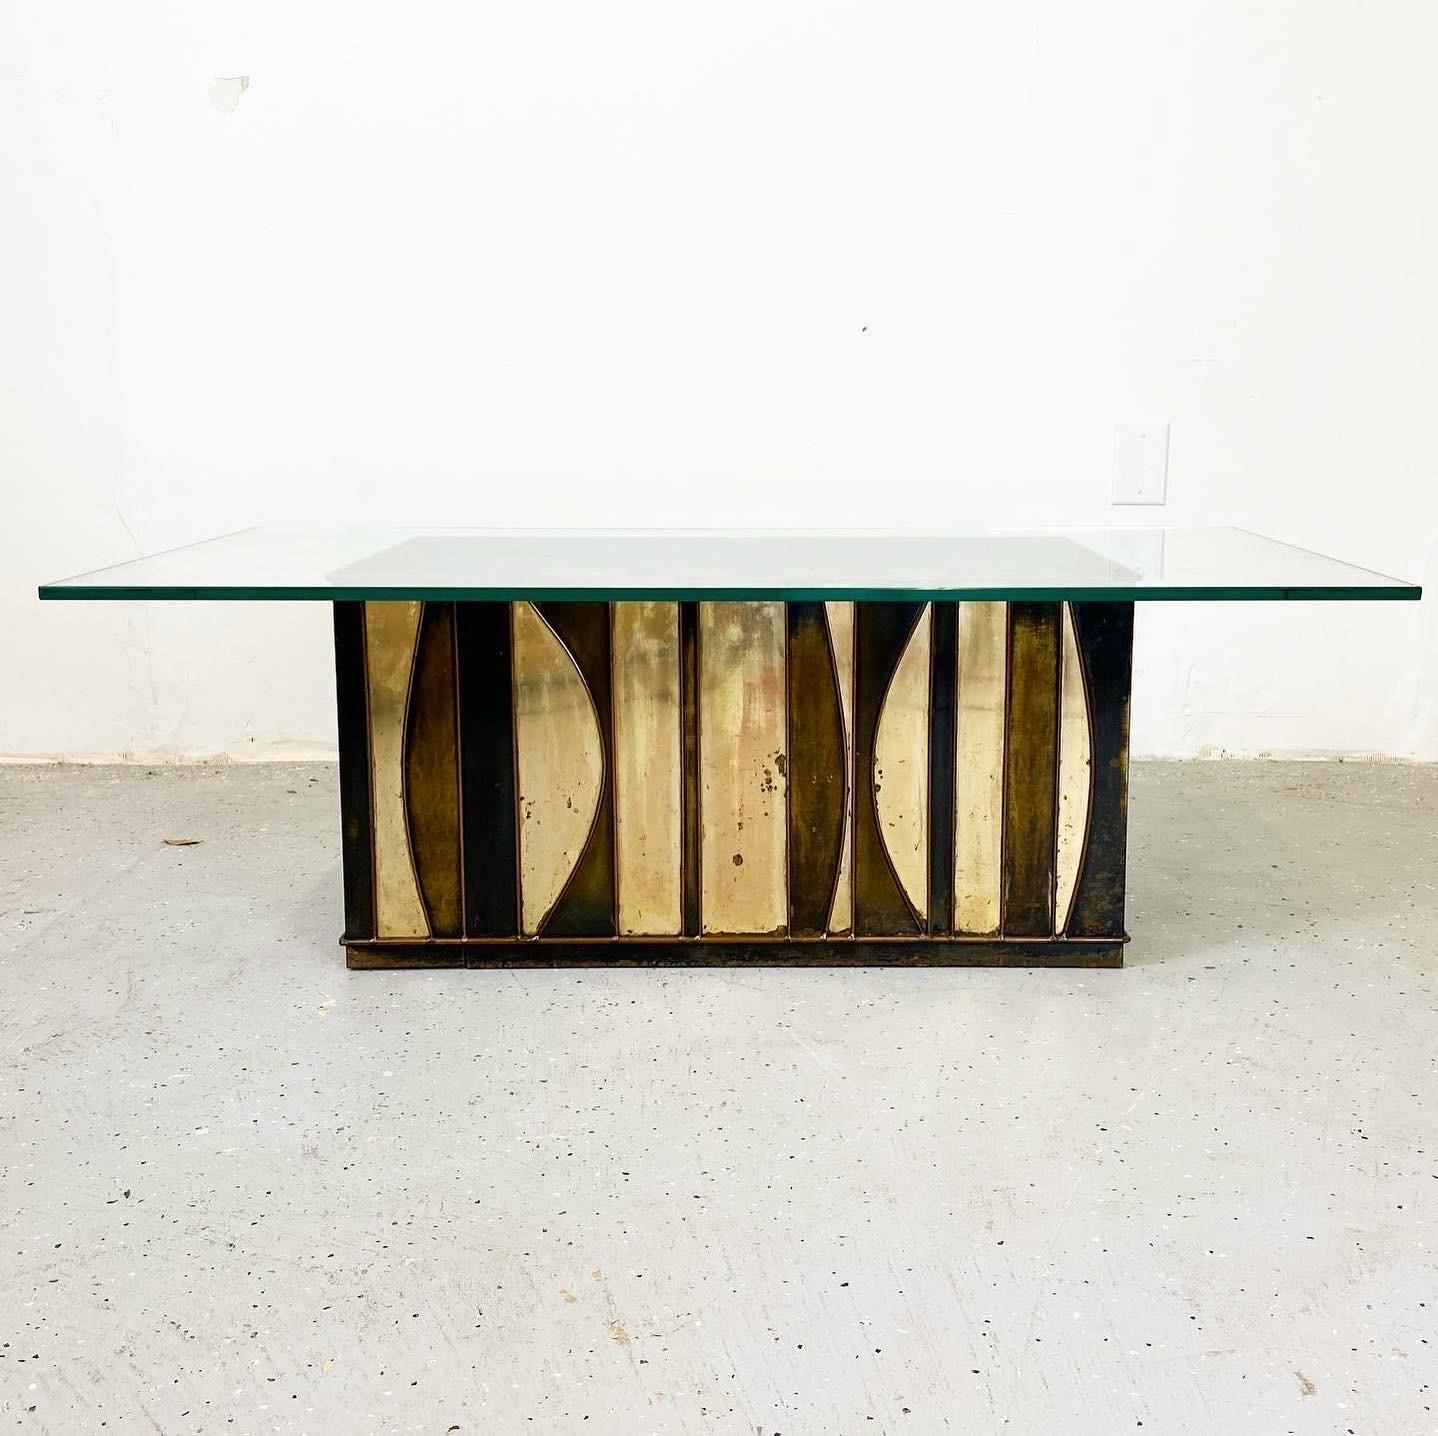 Dies ist ein hervorragender und seltener Tisch von Curtis Jere. Dieses Stück besteht aus geschweißtem Messing, das an einigen Stellen poliert und an anderen unterschiedlich stark patiniert ist. Dieses Werk ist auffallend und einzigartig und erinnert